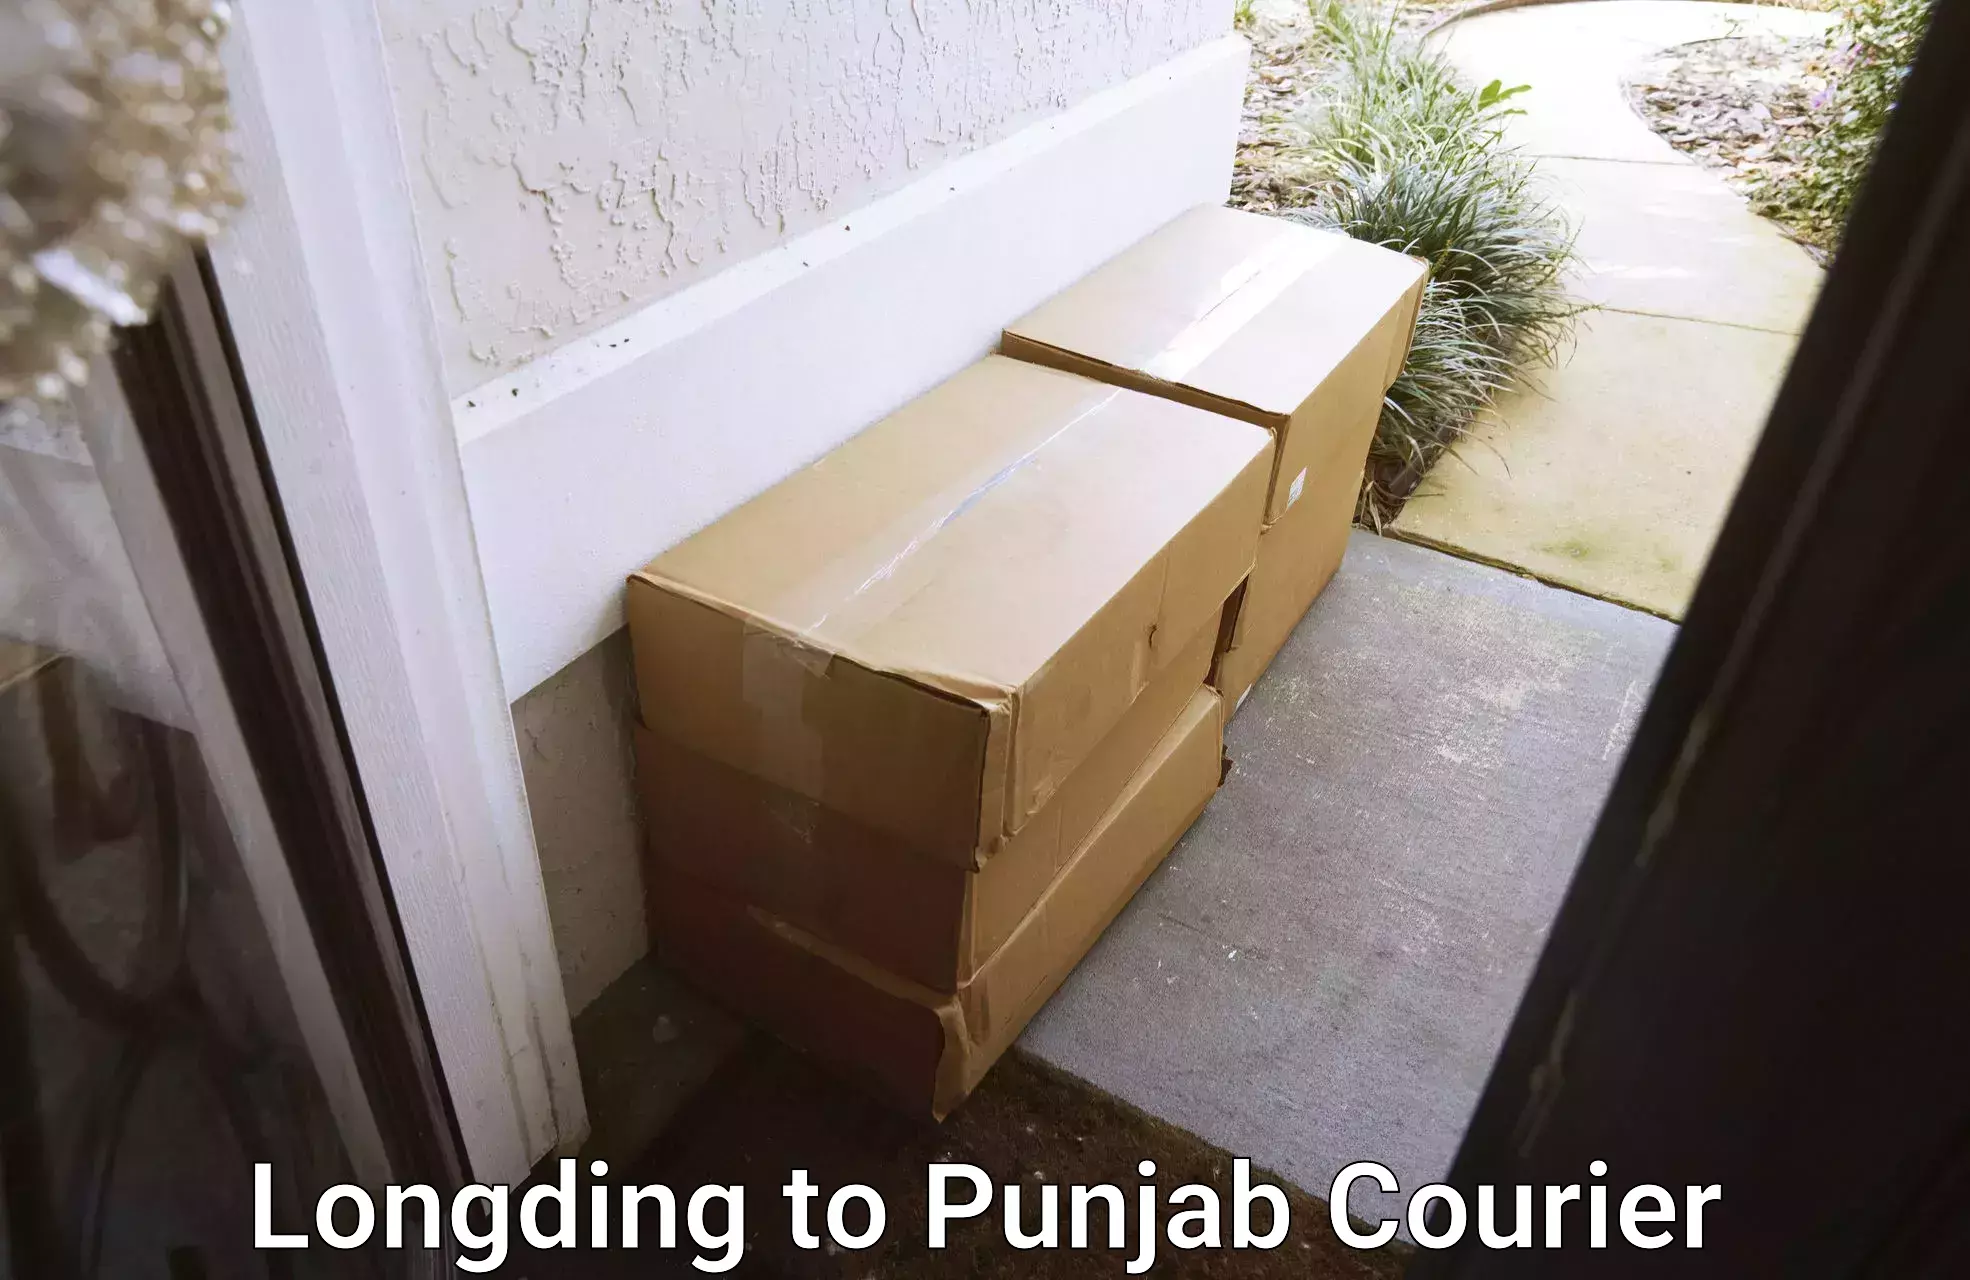 Smart parcel delivery Longding to Central University of Punjab Bathinda